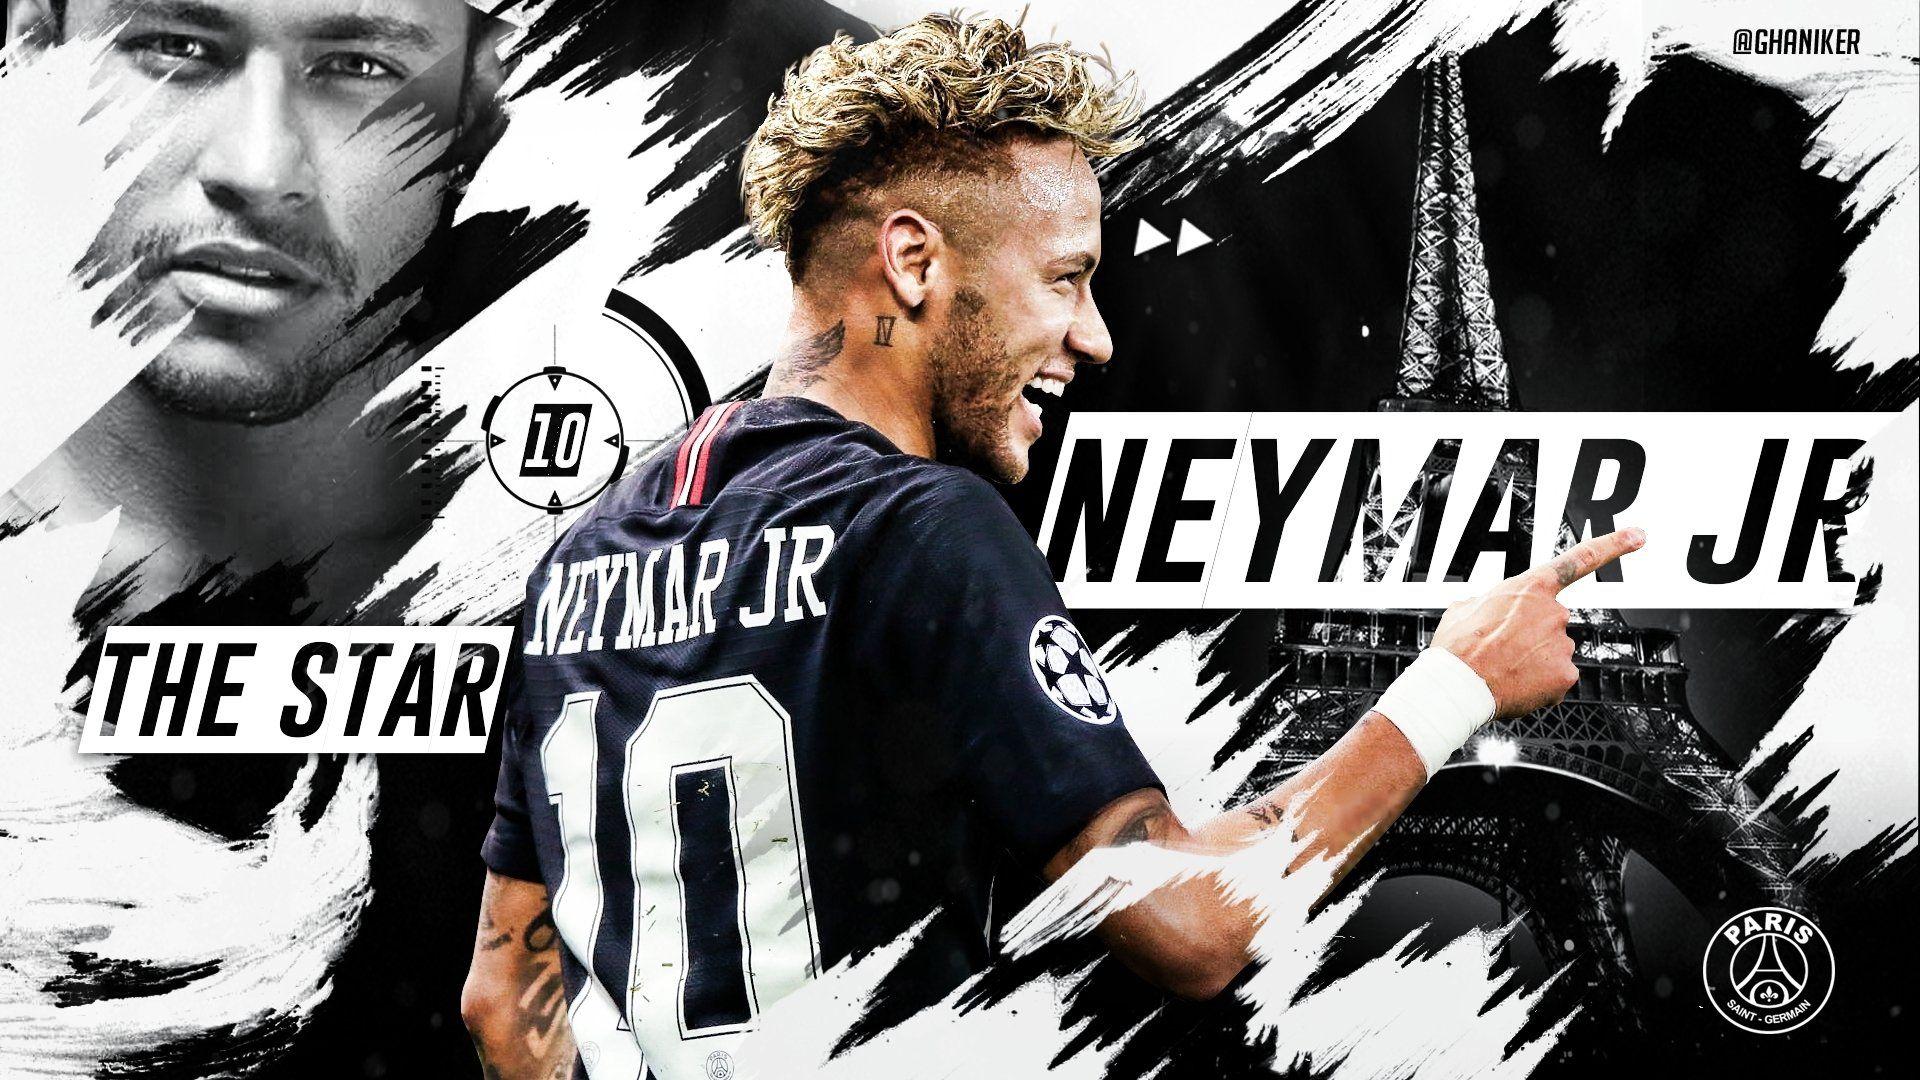 Hình nền máy tính Neymar sẽ giúp bạn tạo ra một không gian làm việc mới đầy sức mạnh và sự quyết tâm. Các hình ảnh chất lượng cao của Neymar sẽ khiến cho chiếc máy tính của bạn trở nên độc đáo và đầy cảm hứng.